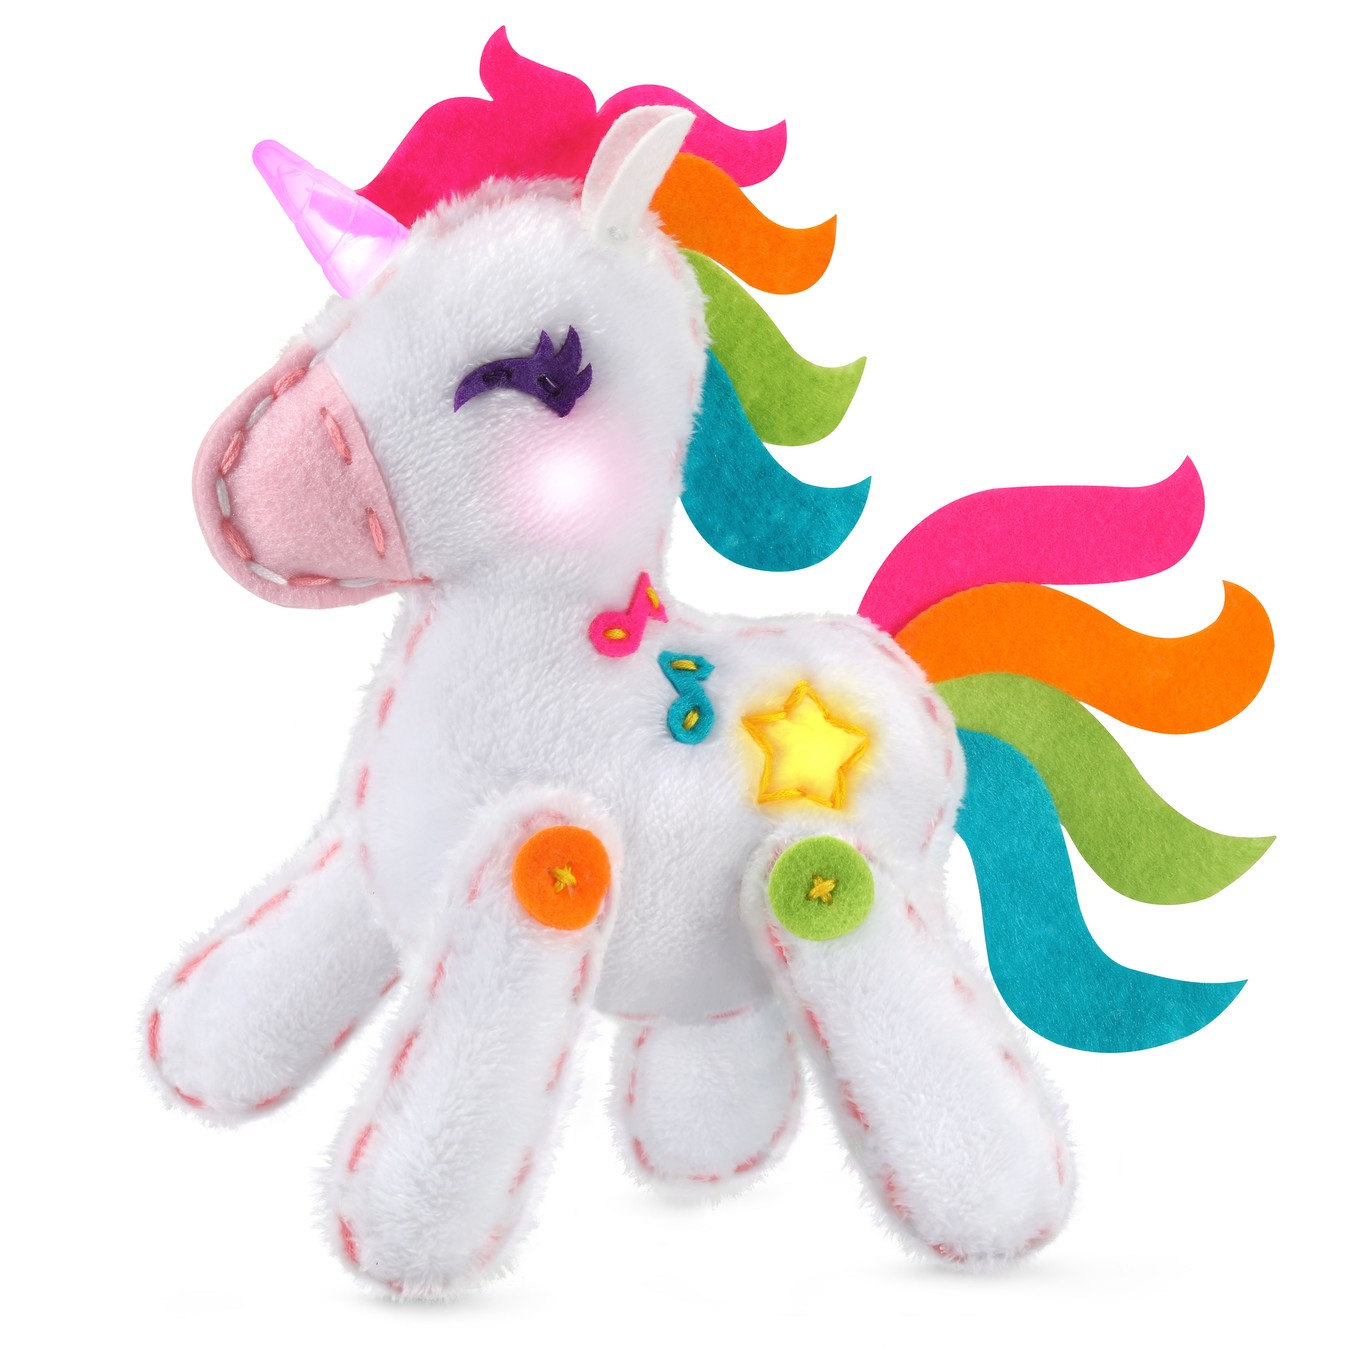 Crayola Bright Pony Beads, 400-Count